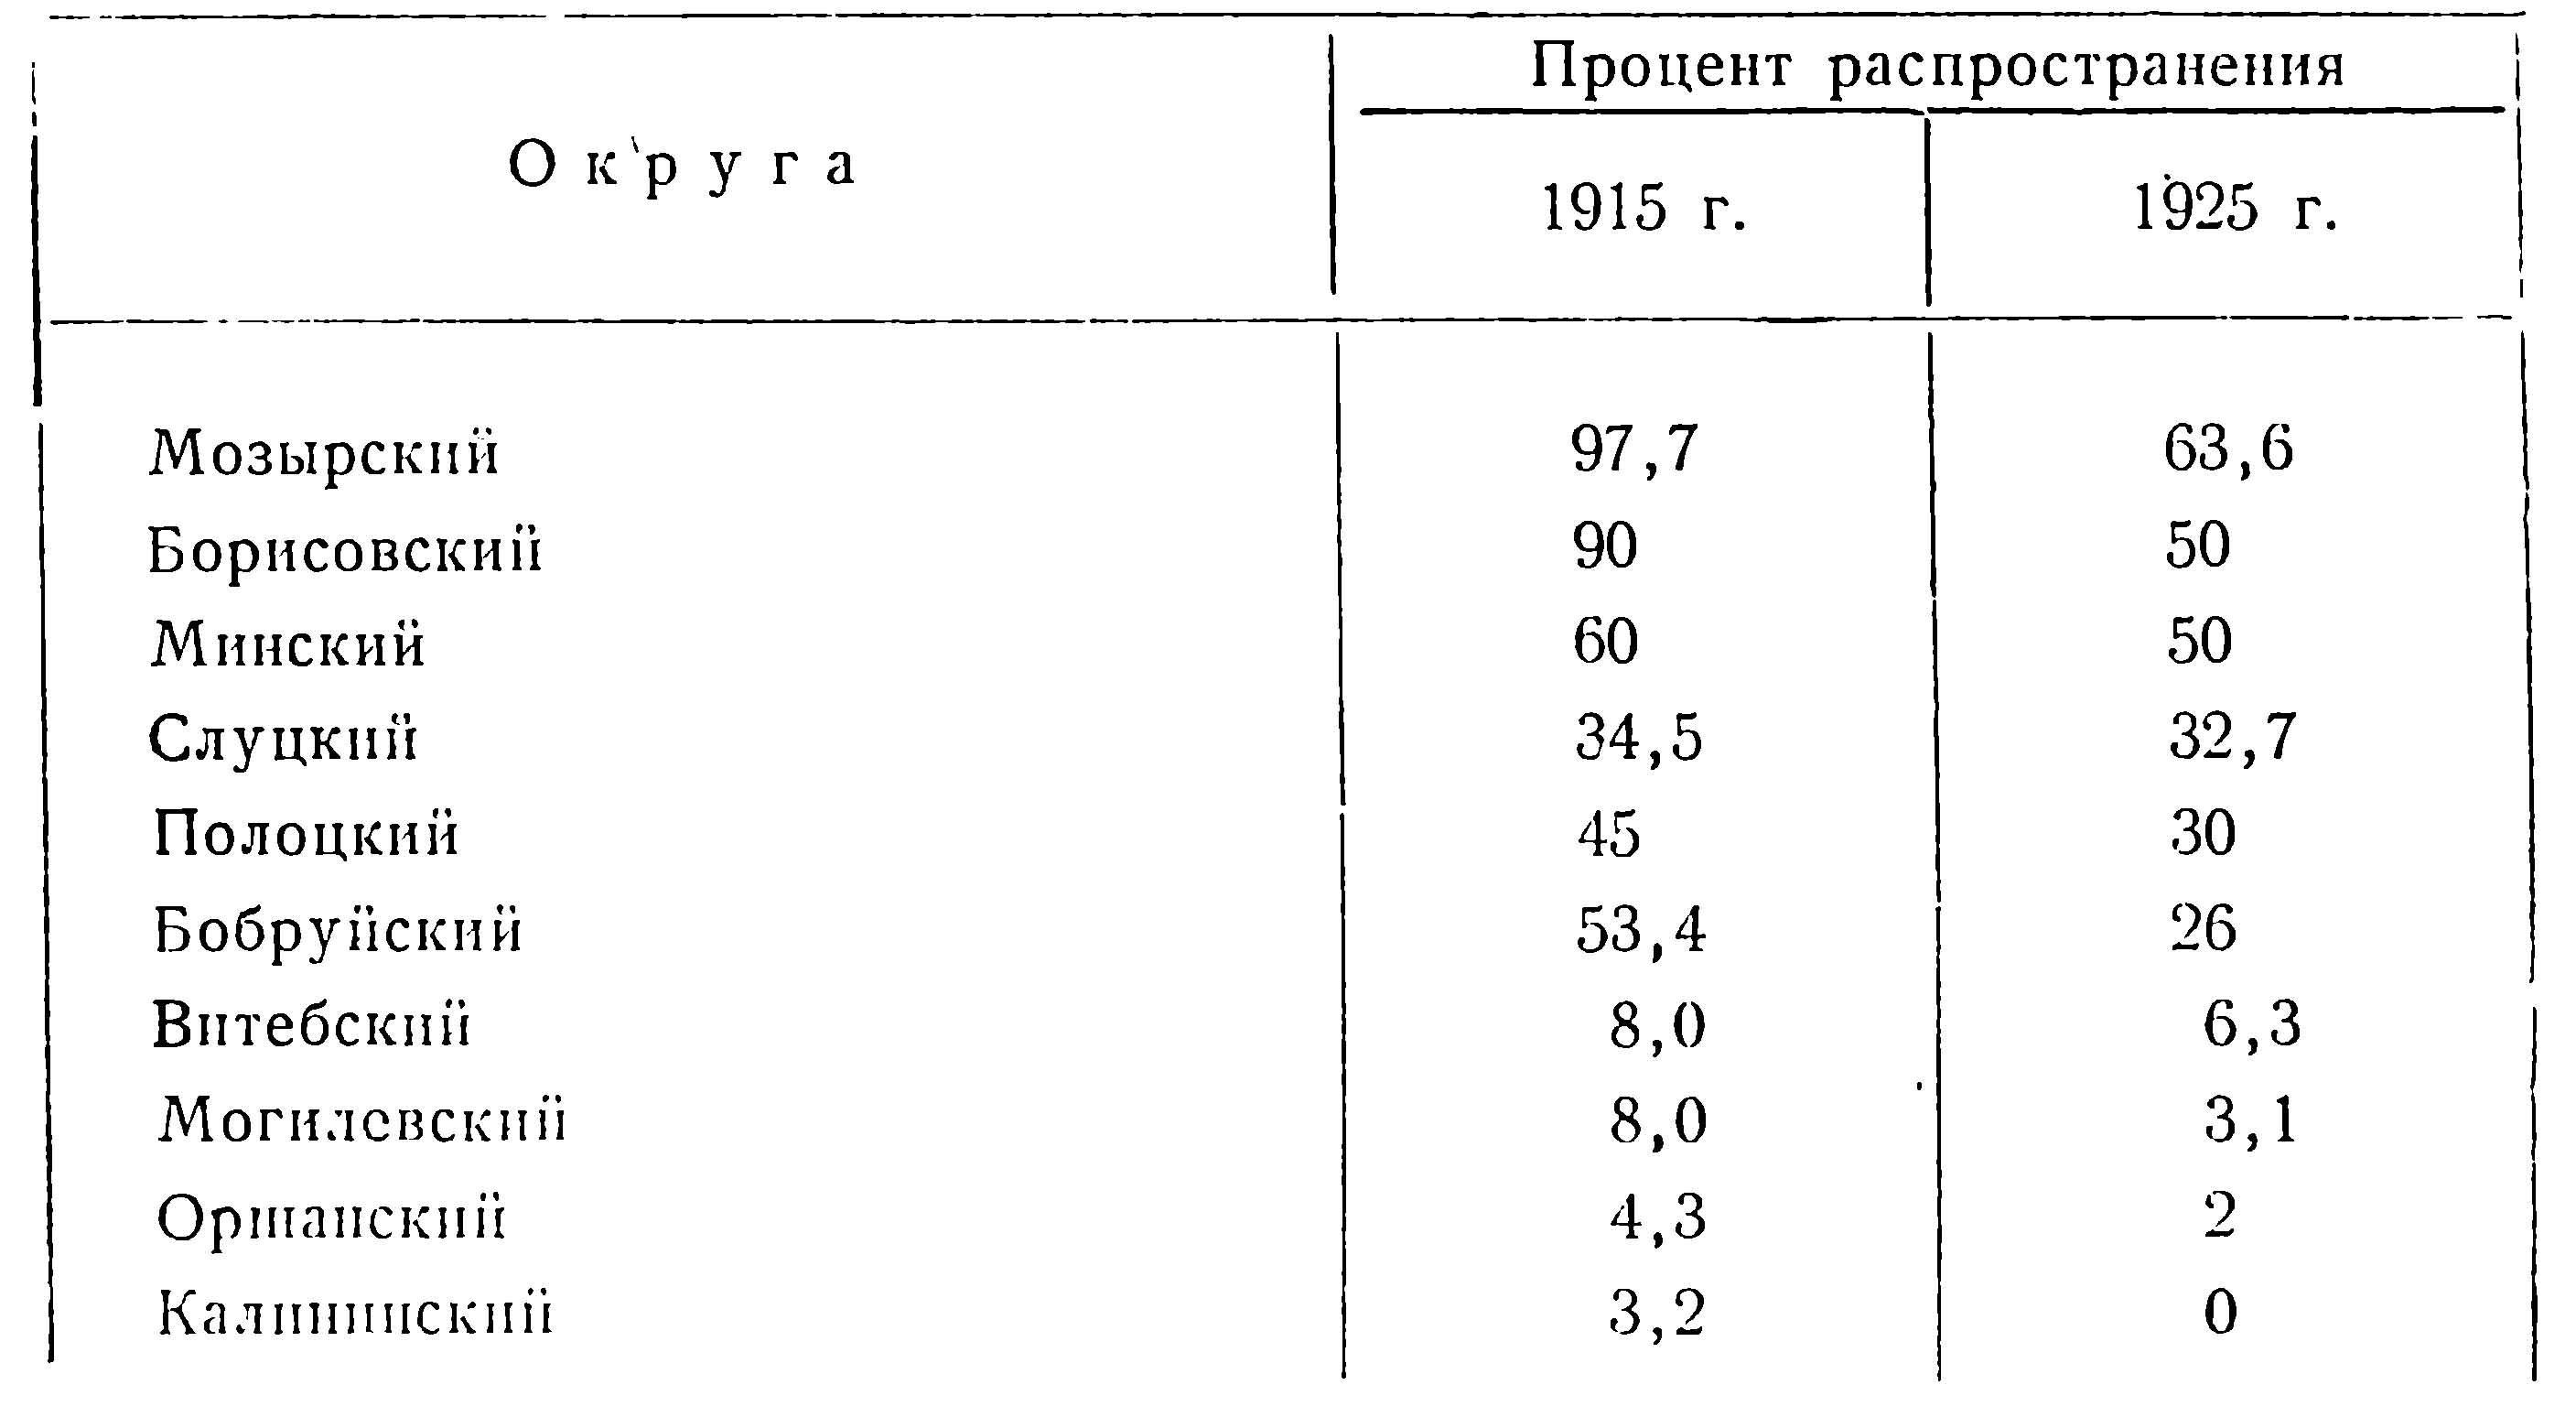 Таблица 1. Распространение косули в БССР в 1925 г. сравнительно с данными 1915 г.